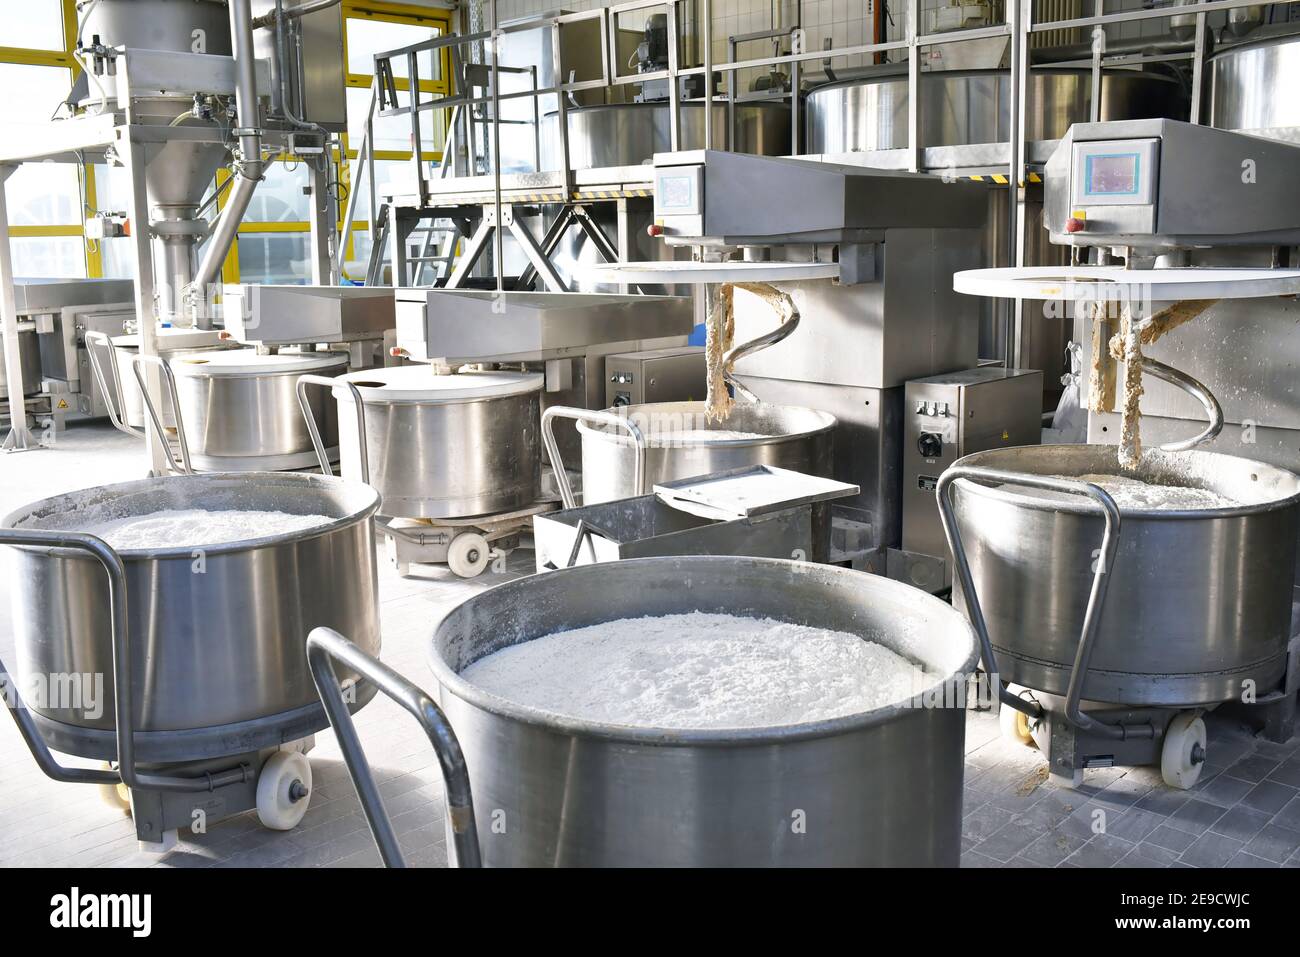 Industrielle Produktion von Backwaren auf einer Montagelinie - Technologie und Maschinen in der Lebensmittelfabrik Stockfoto